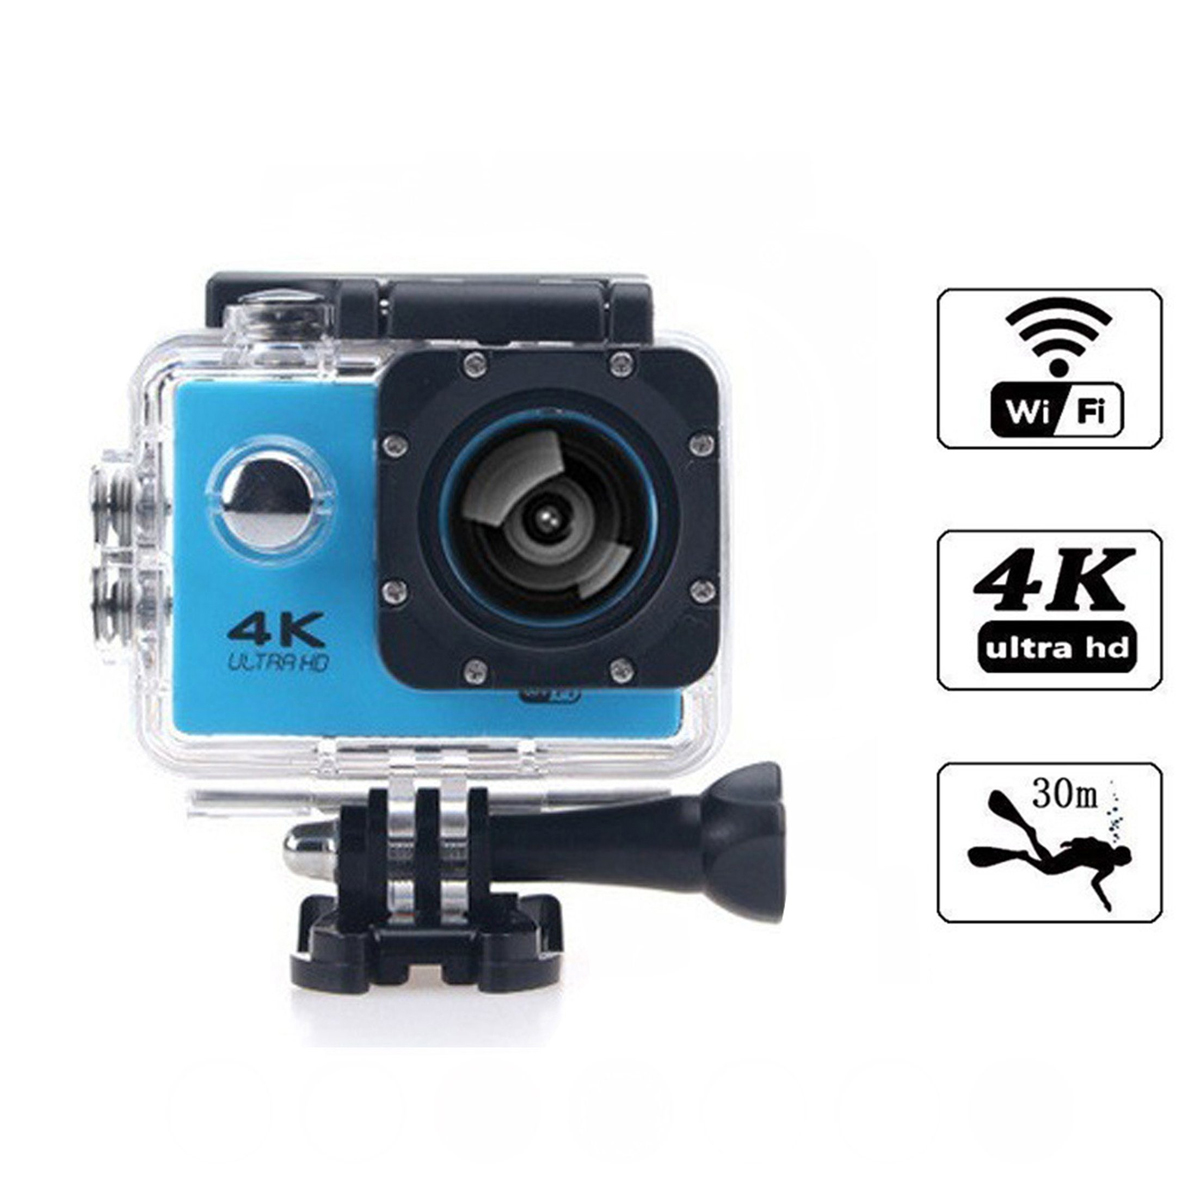 KINSI HD-Kameras,4K-Sportkameras,30m wasserdicht,WiFi-Synchronisation,Unterwasserkameras Action-Kamera